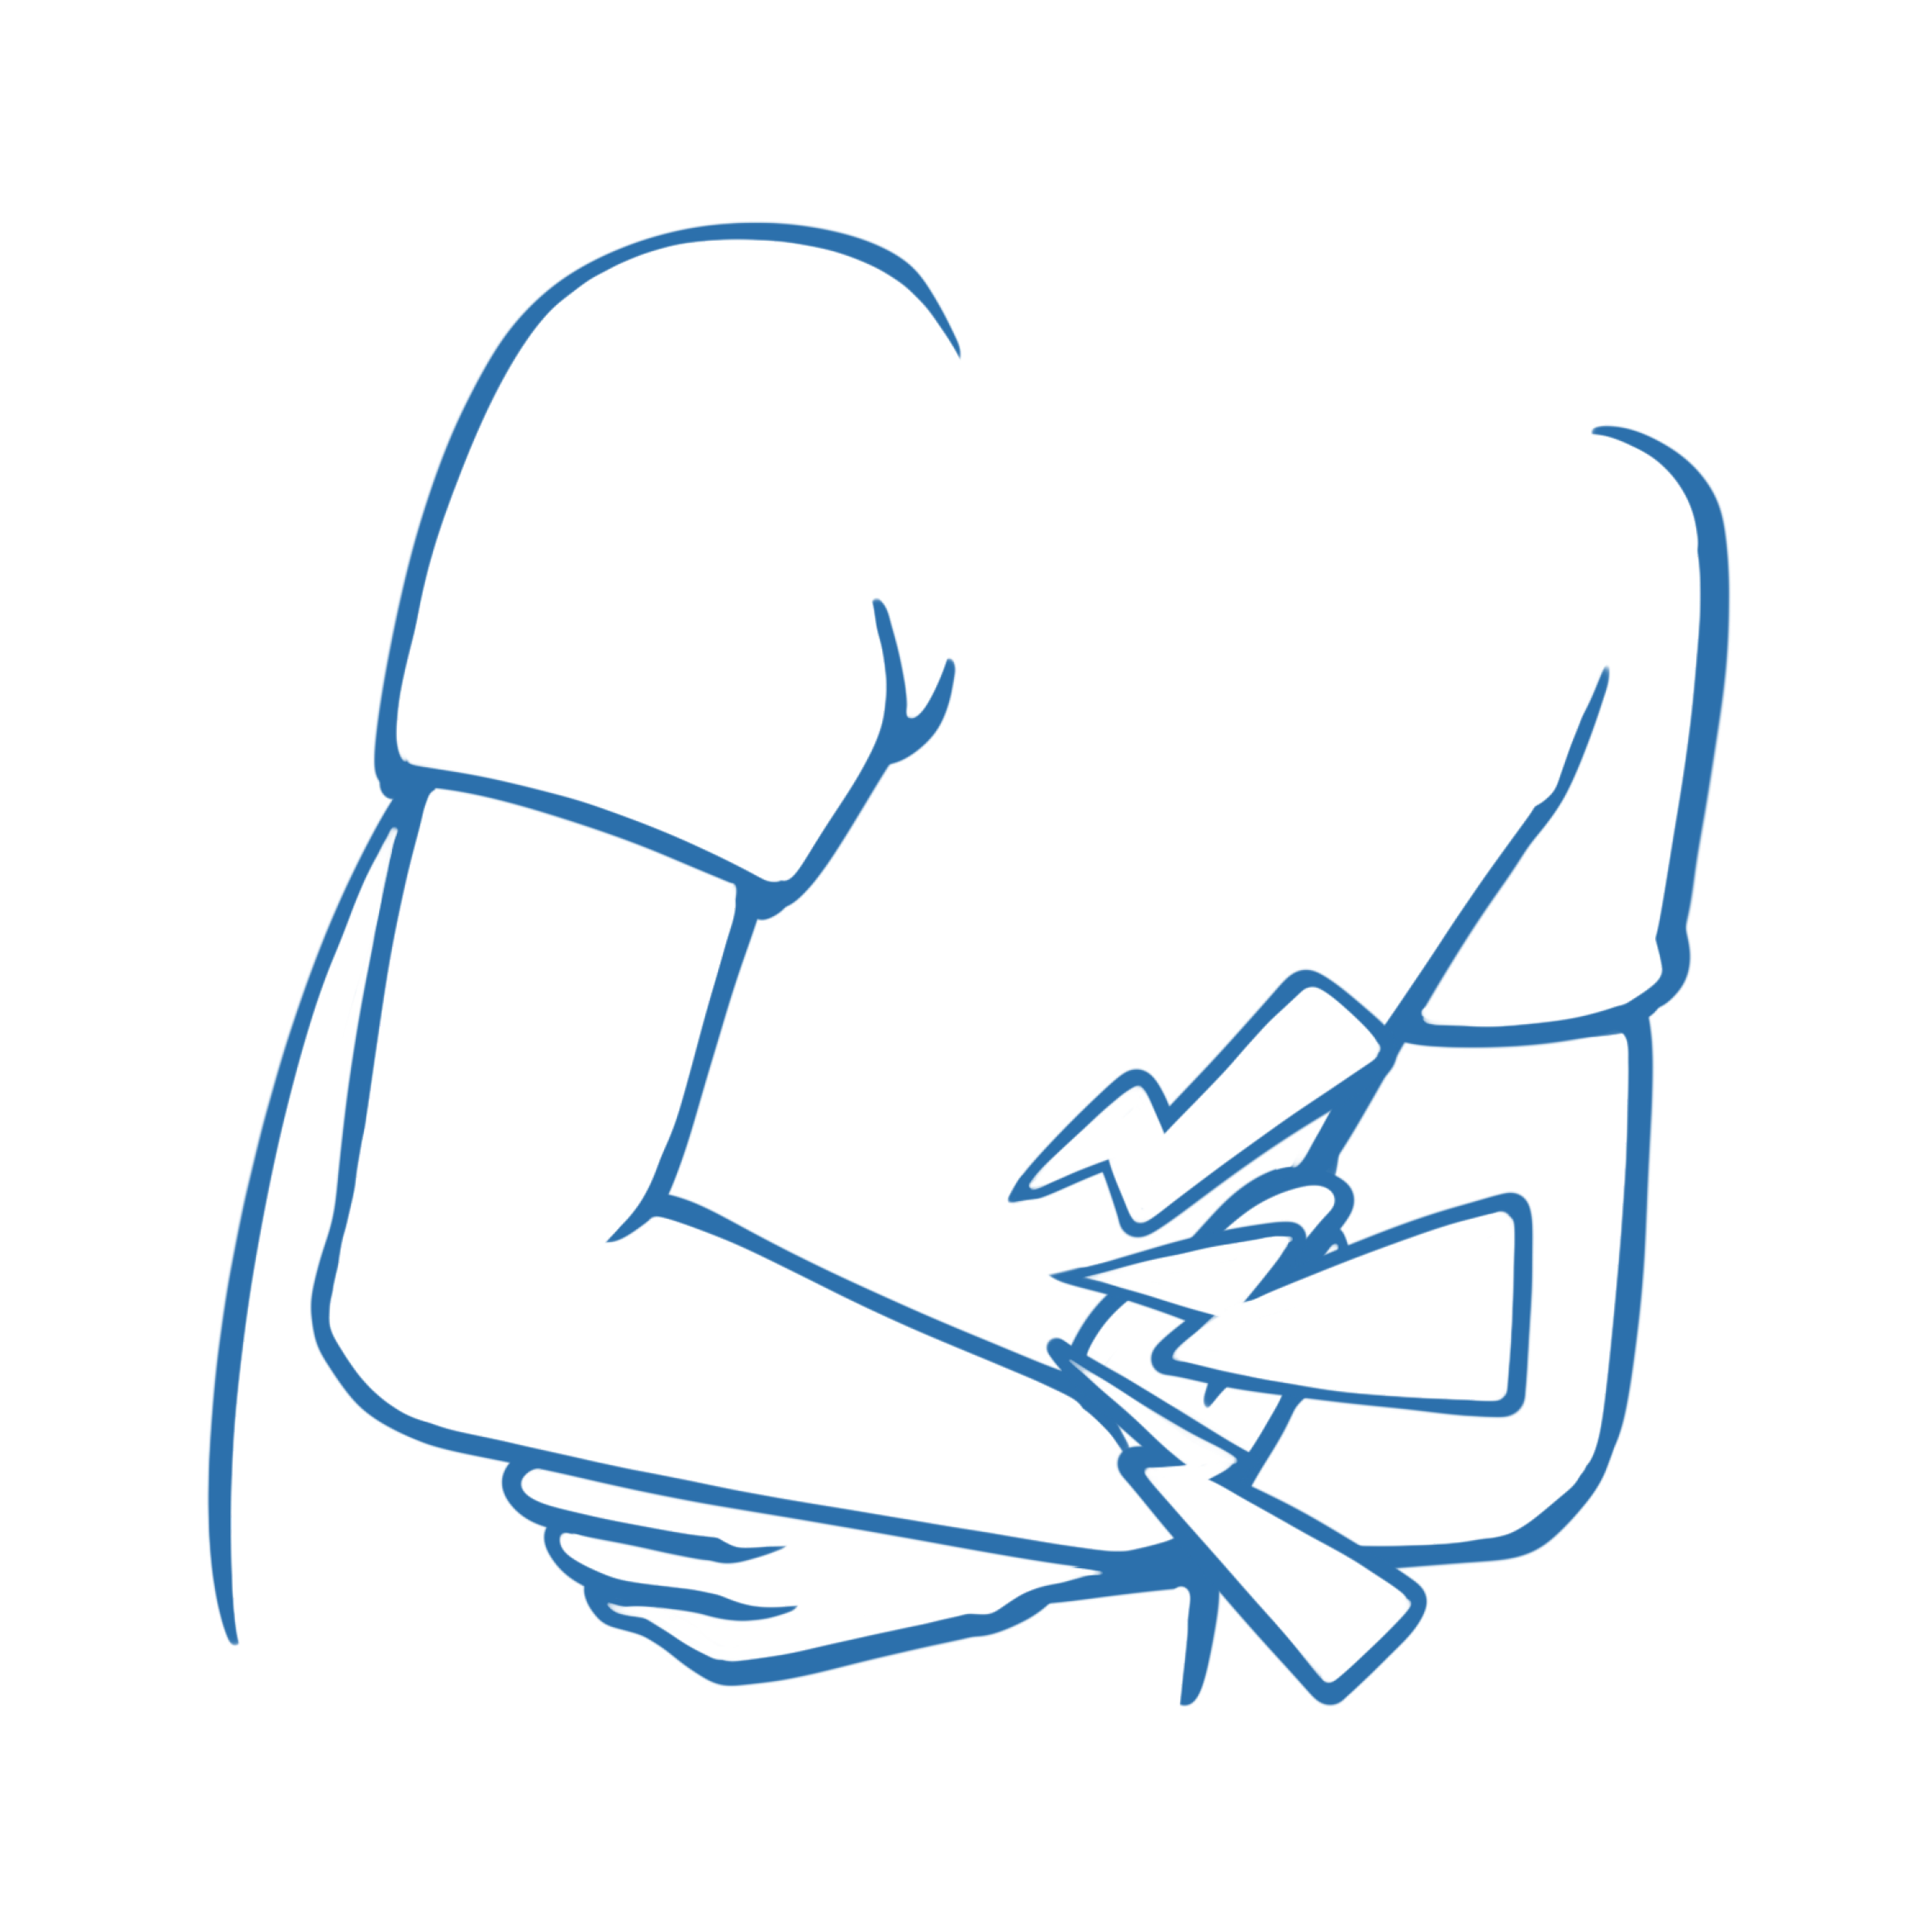 Illustrierter Oberkörper einer Person in gebückter Haltung. Die Person verschränkt auf Bauchhöhe die Arme, die Bauchschmerzen werden über Zickzack-Pfeile dargestellt.